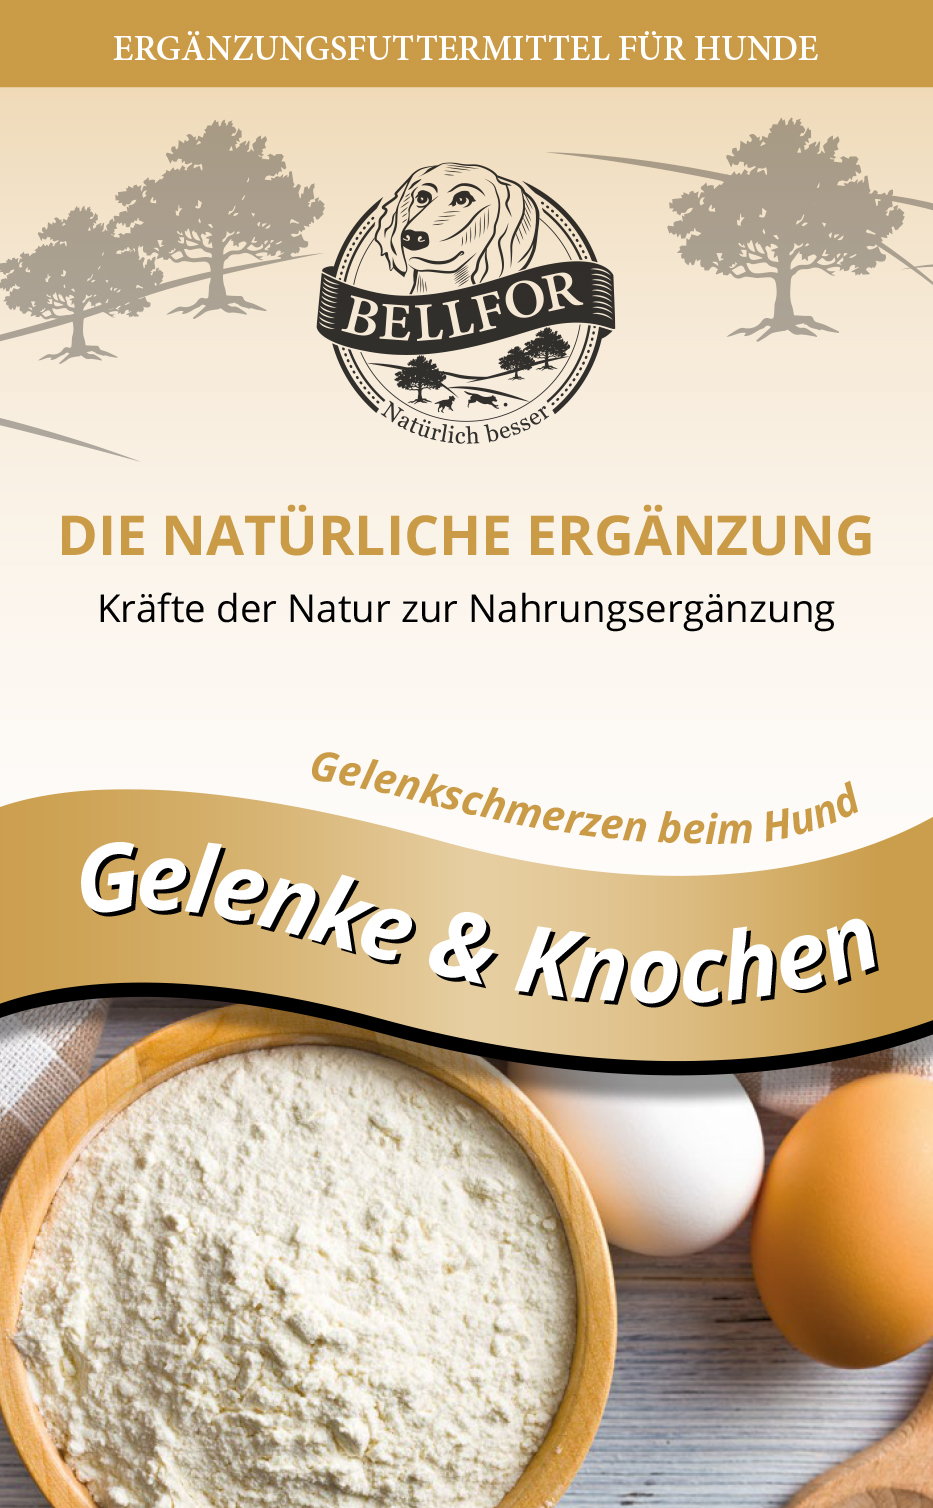 Bellfor "Knochen & Gelenke"-Kekse, 200g-Beutel